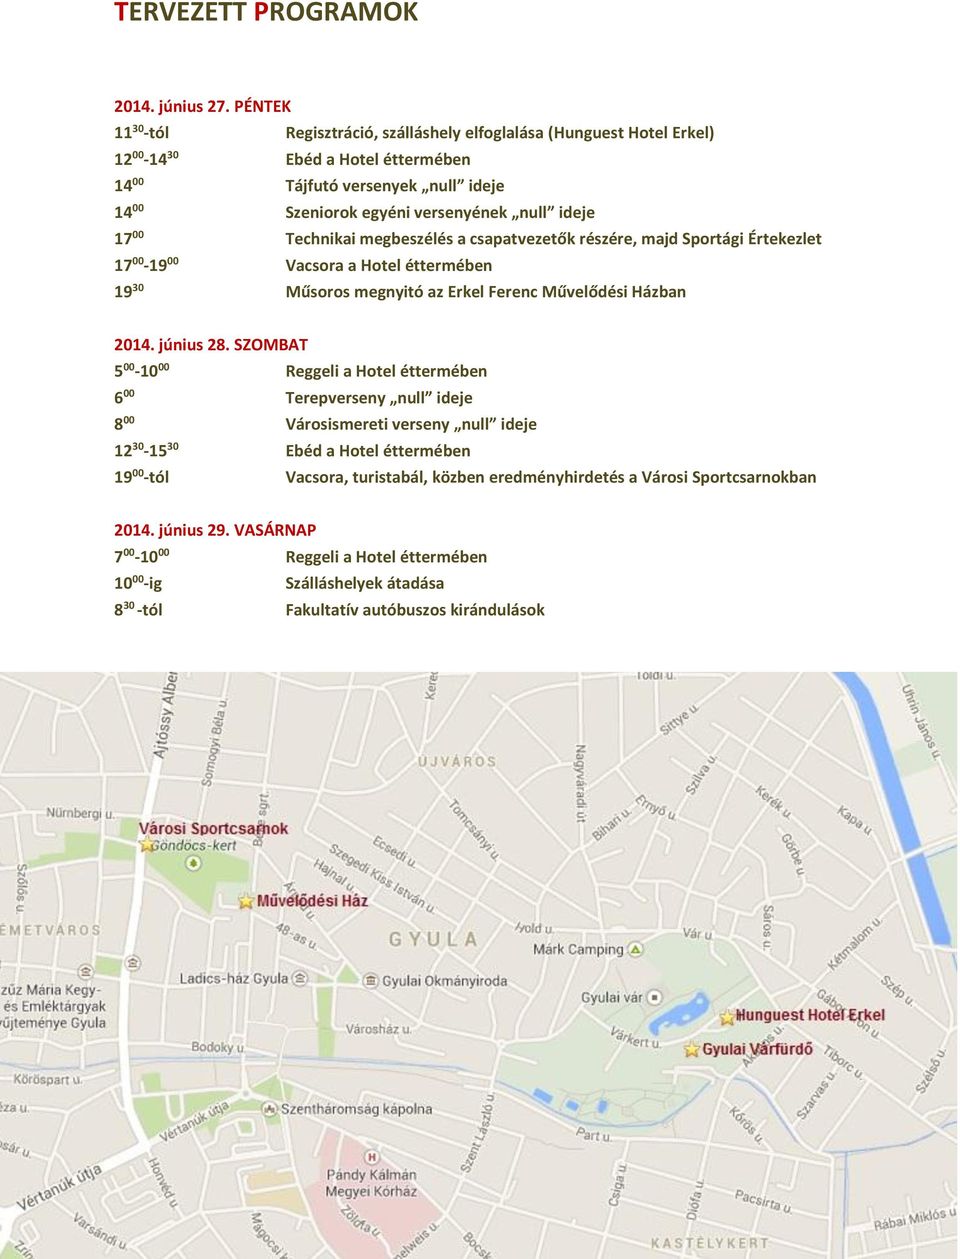 00 Technikai megbeszélés a csapatvezetők részére, majd Sportági Értekezlet 17 00-19 00 Vacsora a Hotel éttermében 19 30 Műsoros megnyitó az Erkel Ferenc Művelődési Házban 2014. június 28.